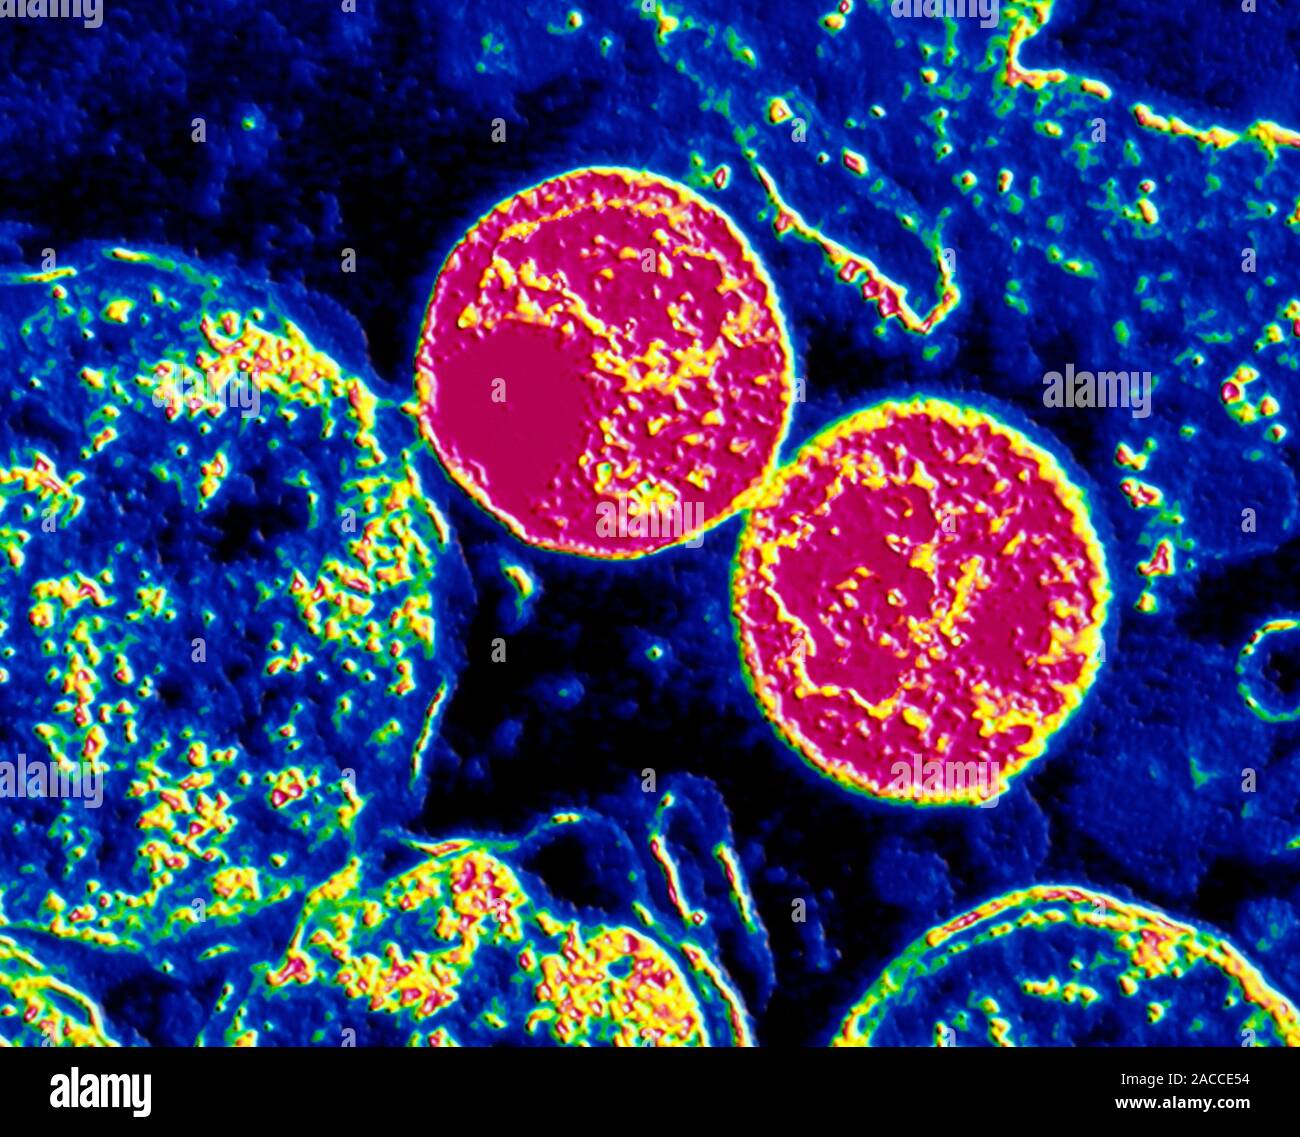 Цена хламидиоза. Бактерия хламидия трахоматис. Хламидия трахоматис микроскопия. Хламидия трахоматис под микроскопом.